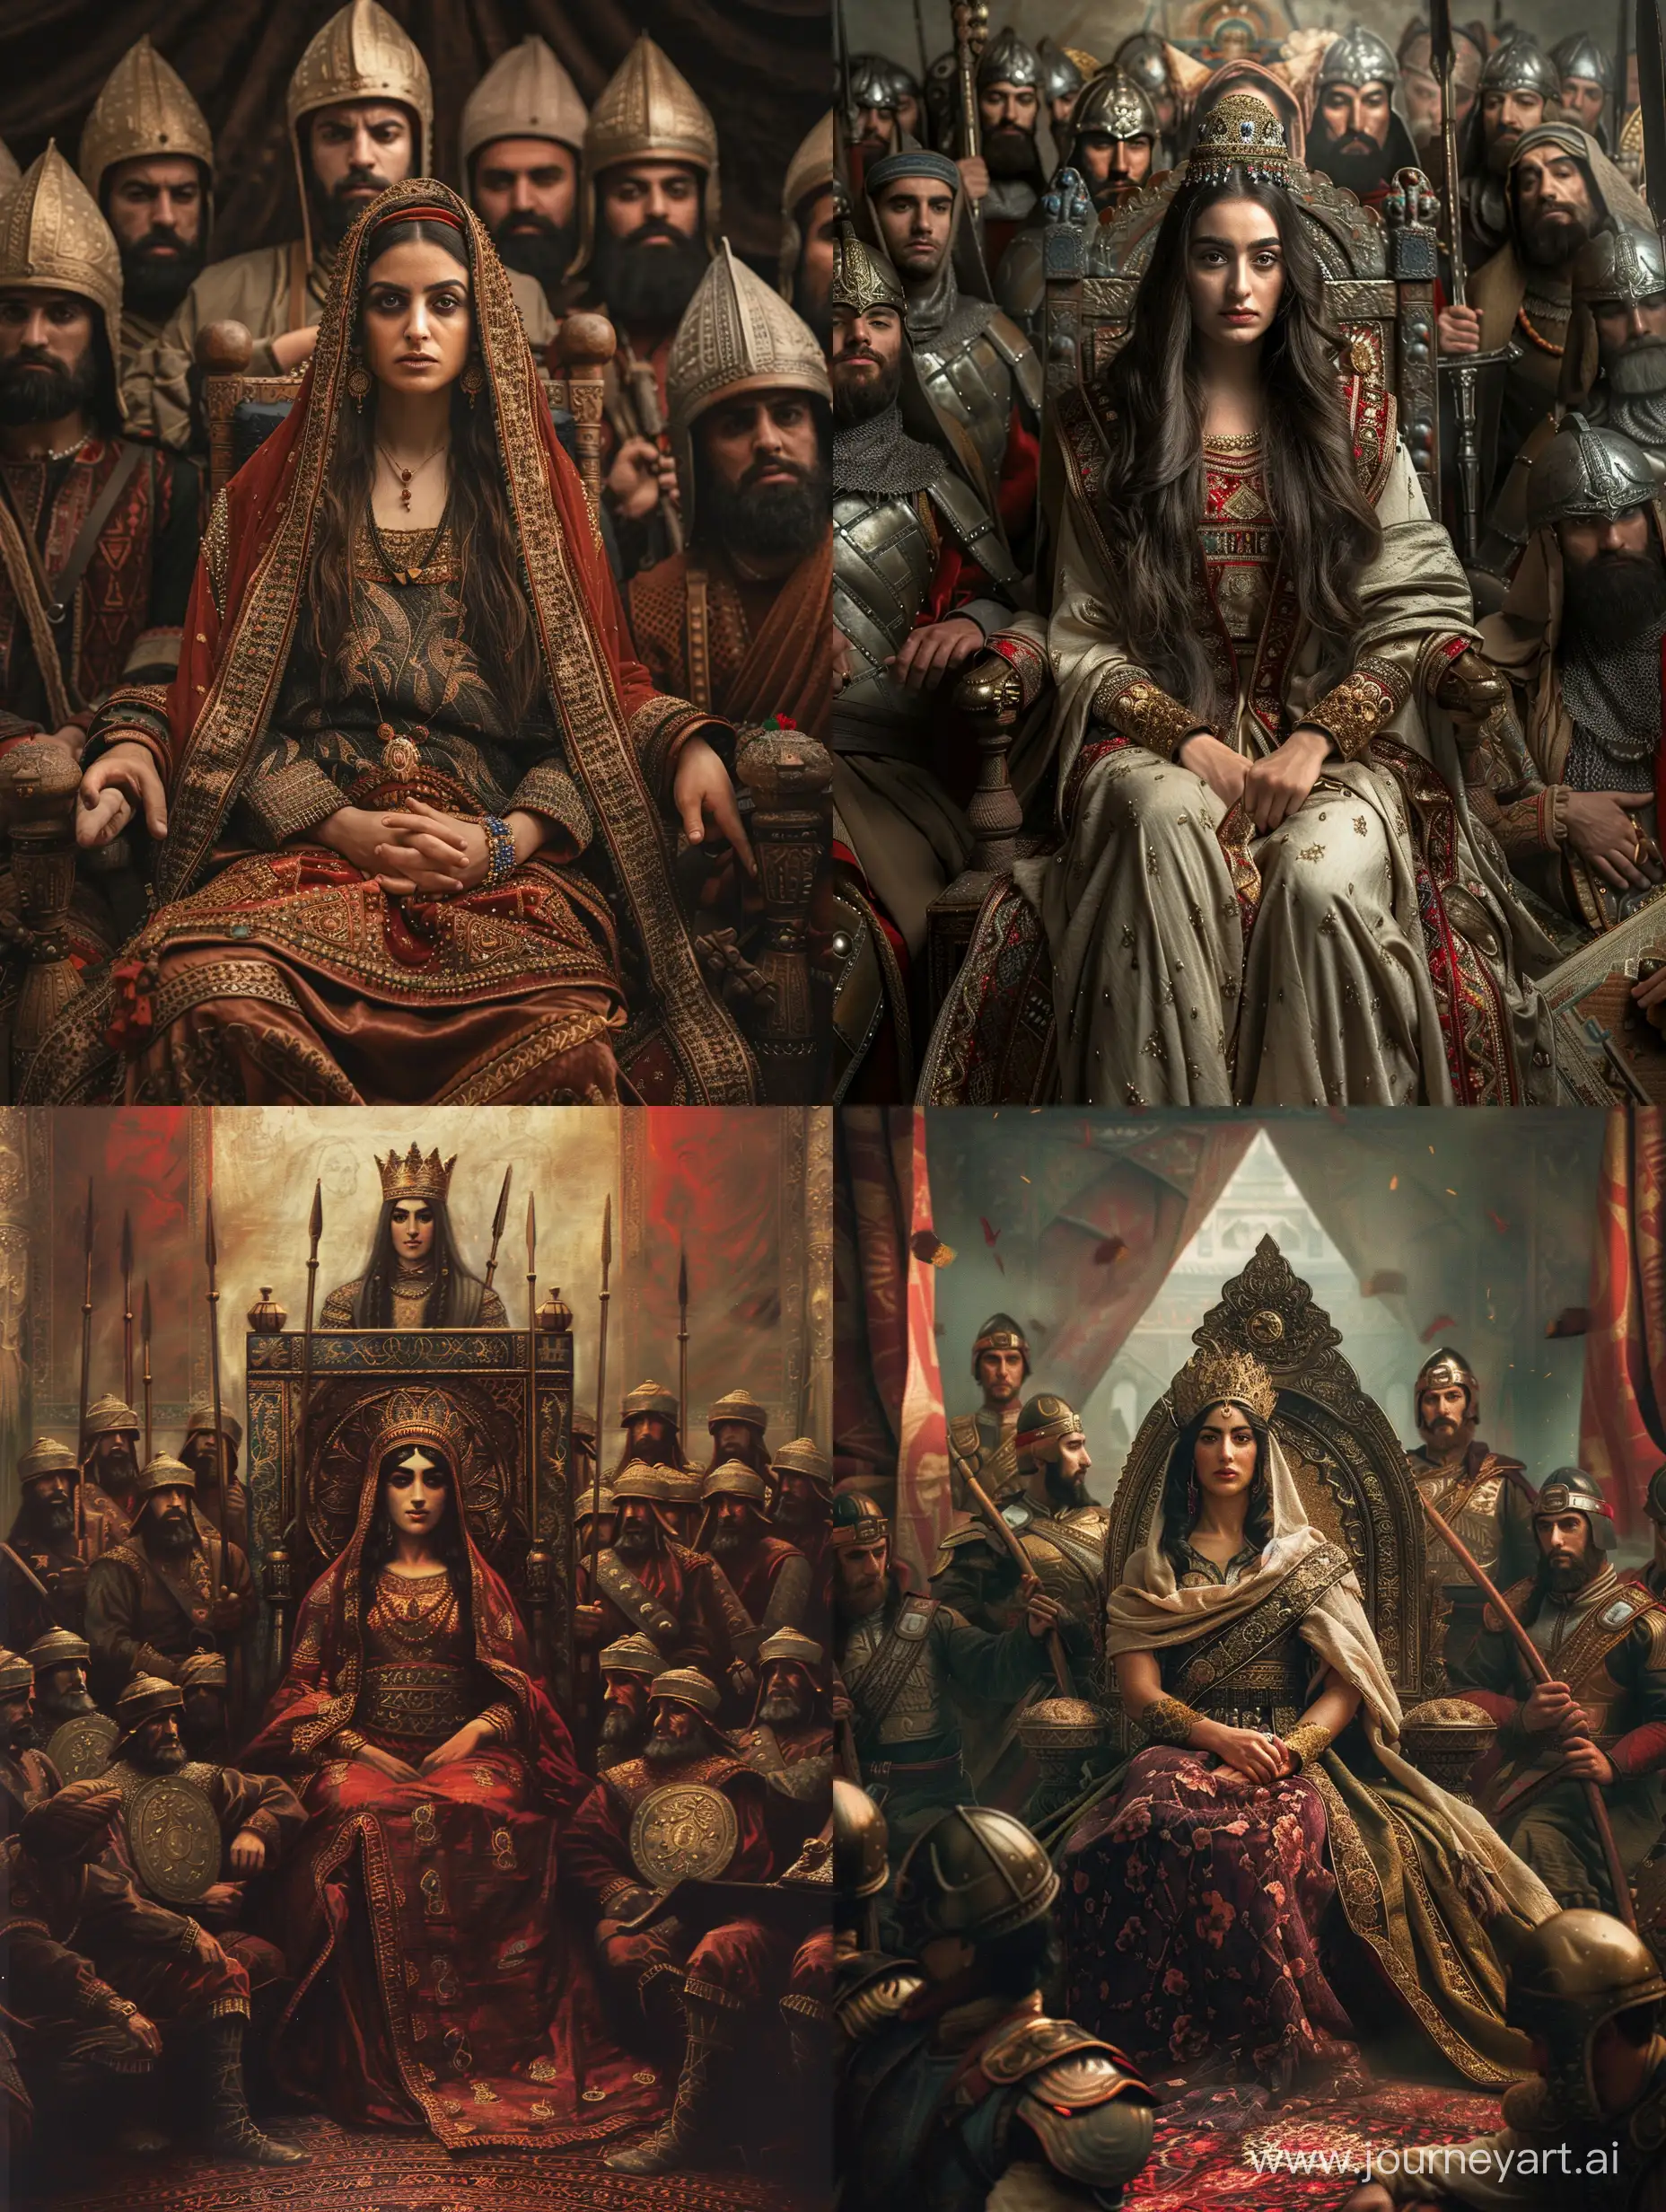 تصویر واقعی از پوراندخت، اولین زنی که در ایران پادشاه شد بر روی تخت پادشاهی و ارتش سربازان در کنار او